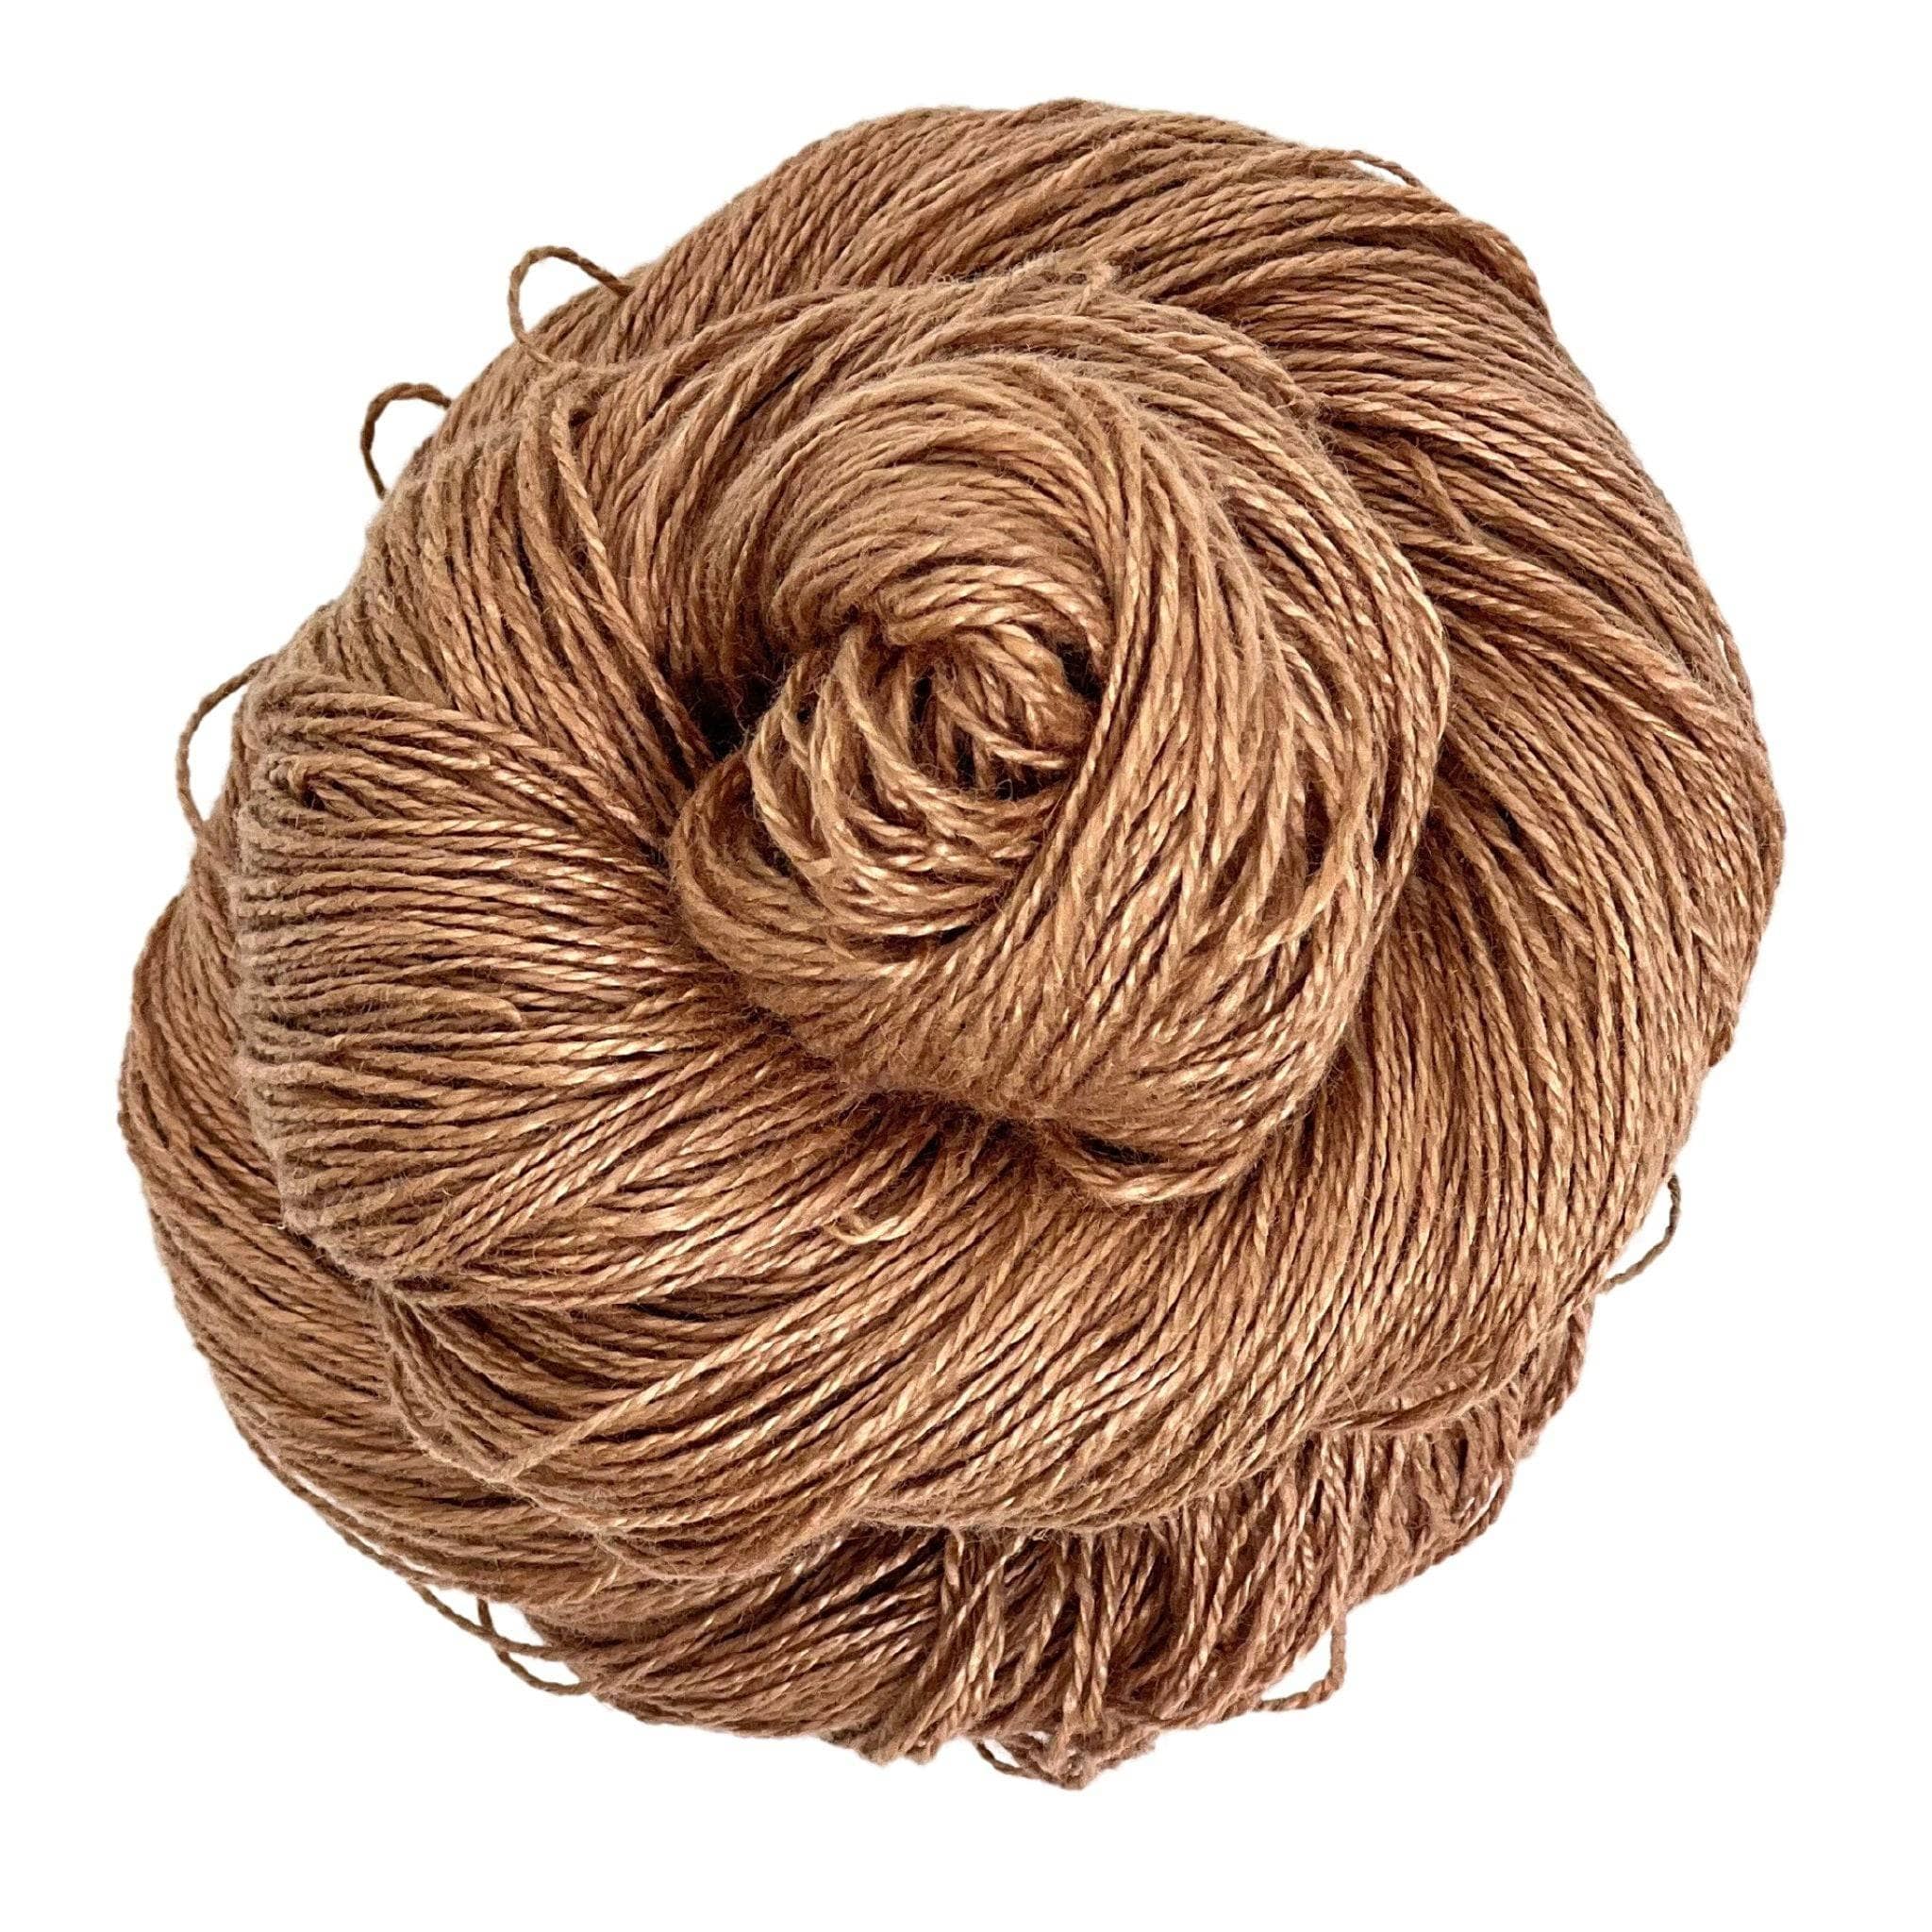 Natural linen yarn - Lovelin